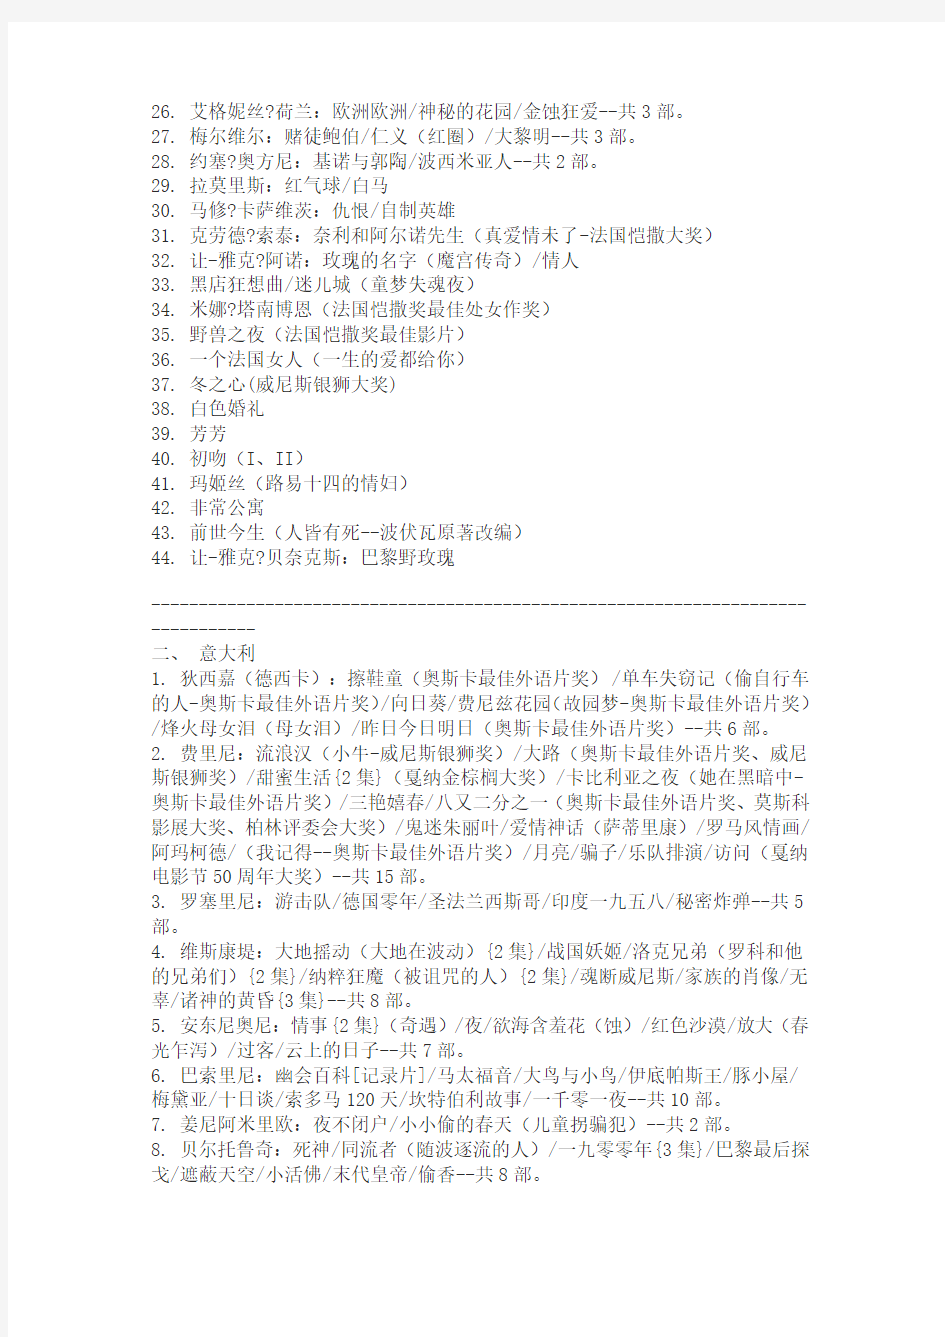 北京电影学院必看电影清单